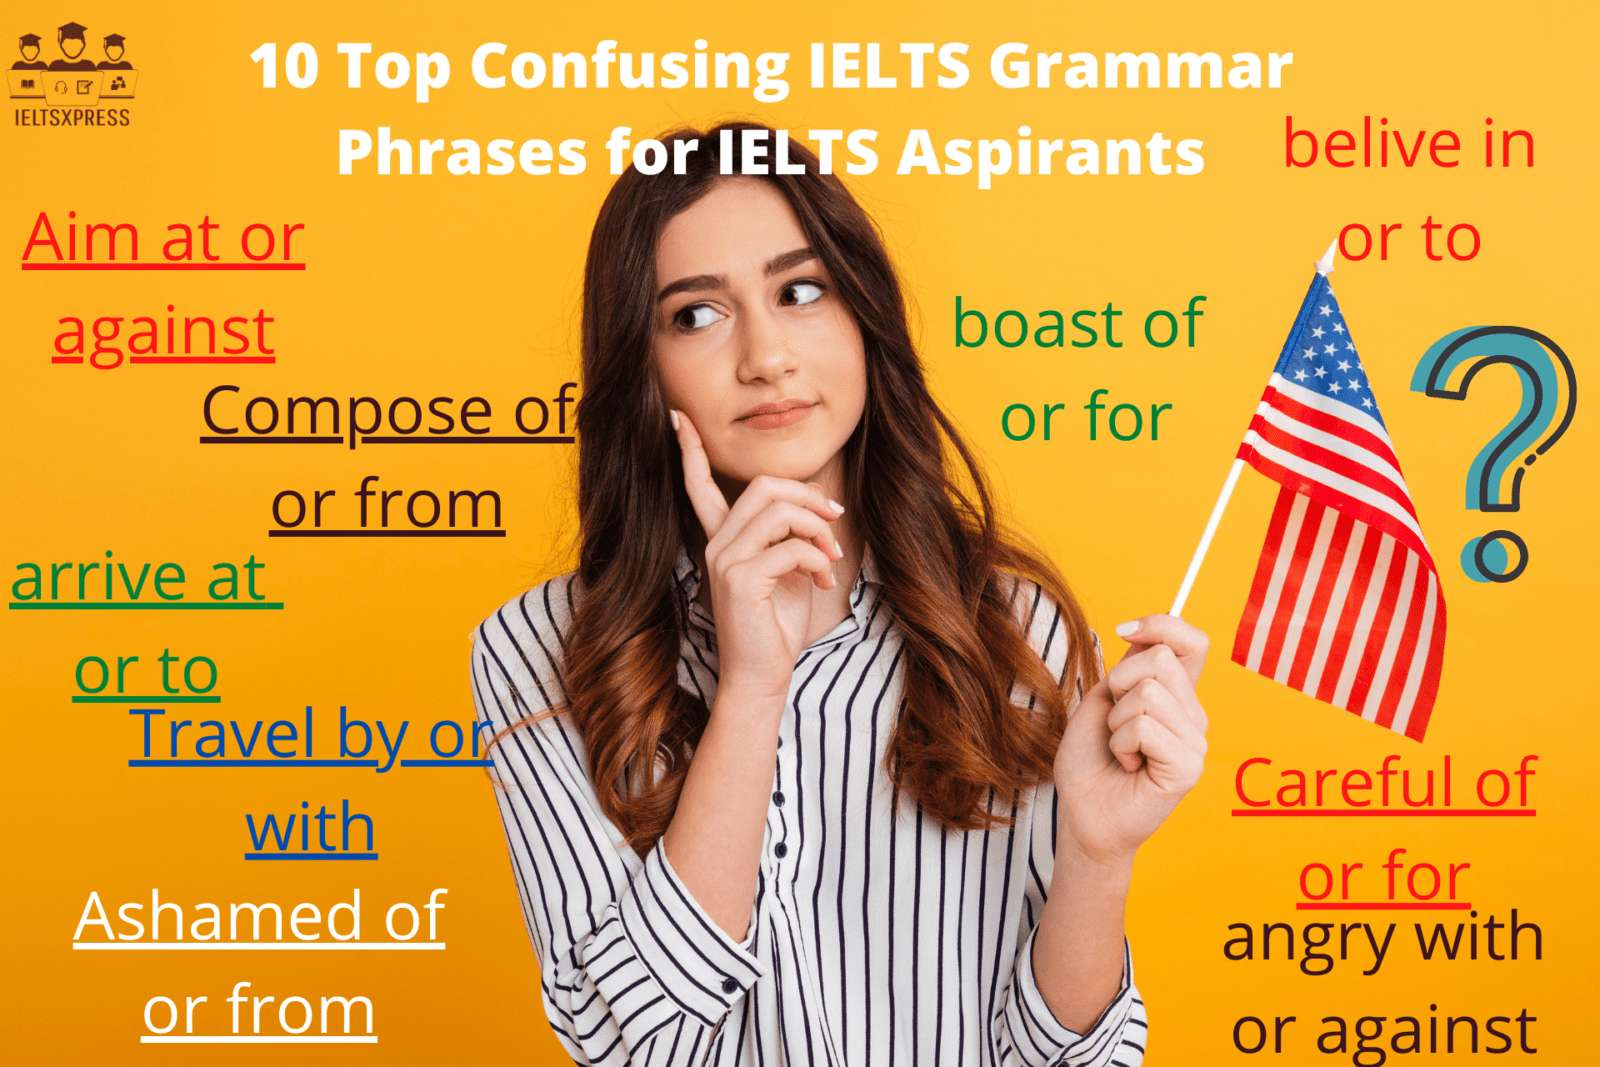 10 Top Confusing IELTS Grammar Phrases for IELTS Aspirants